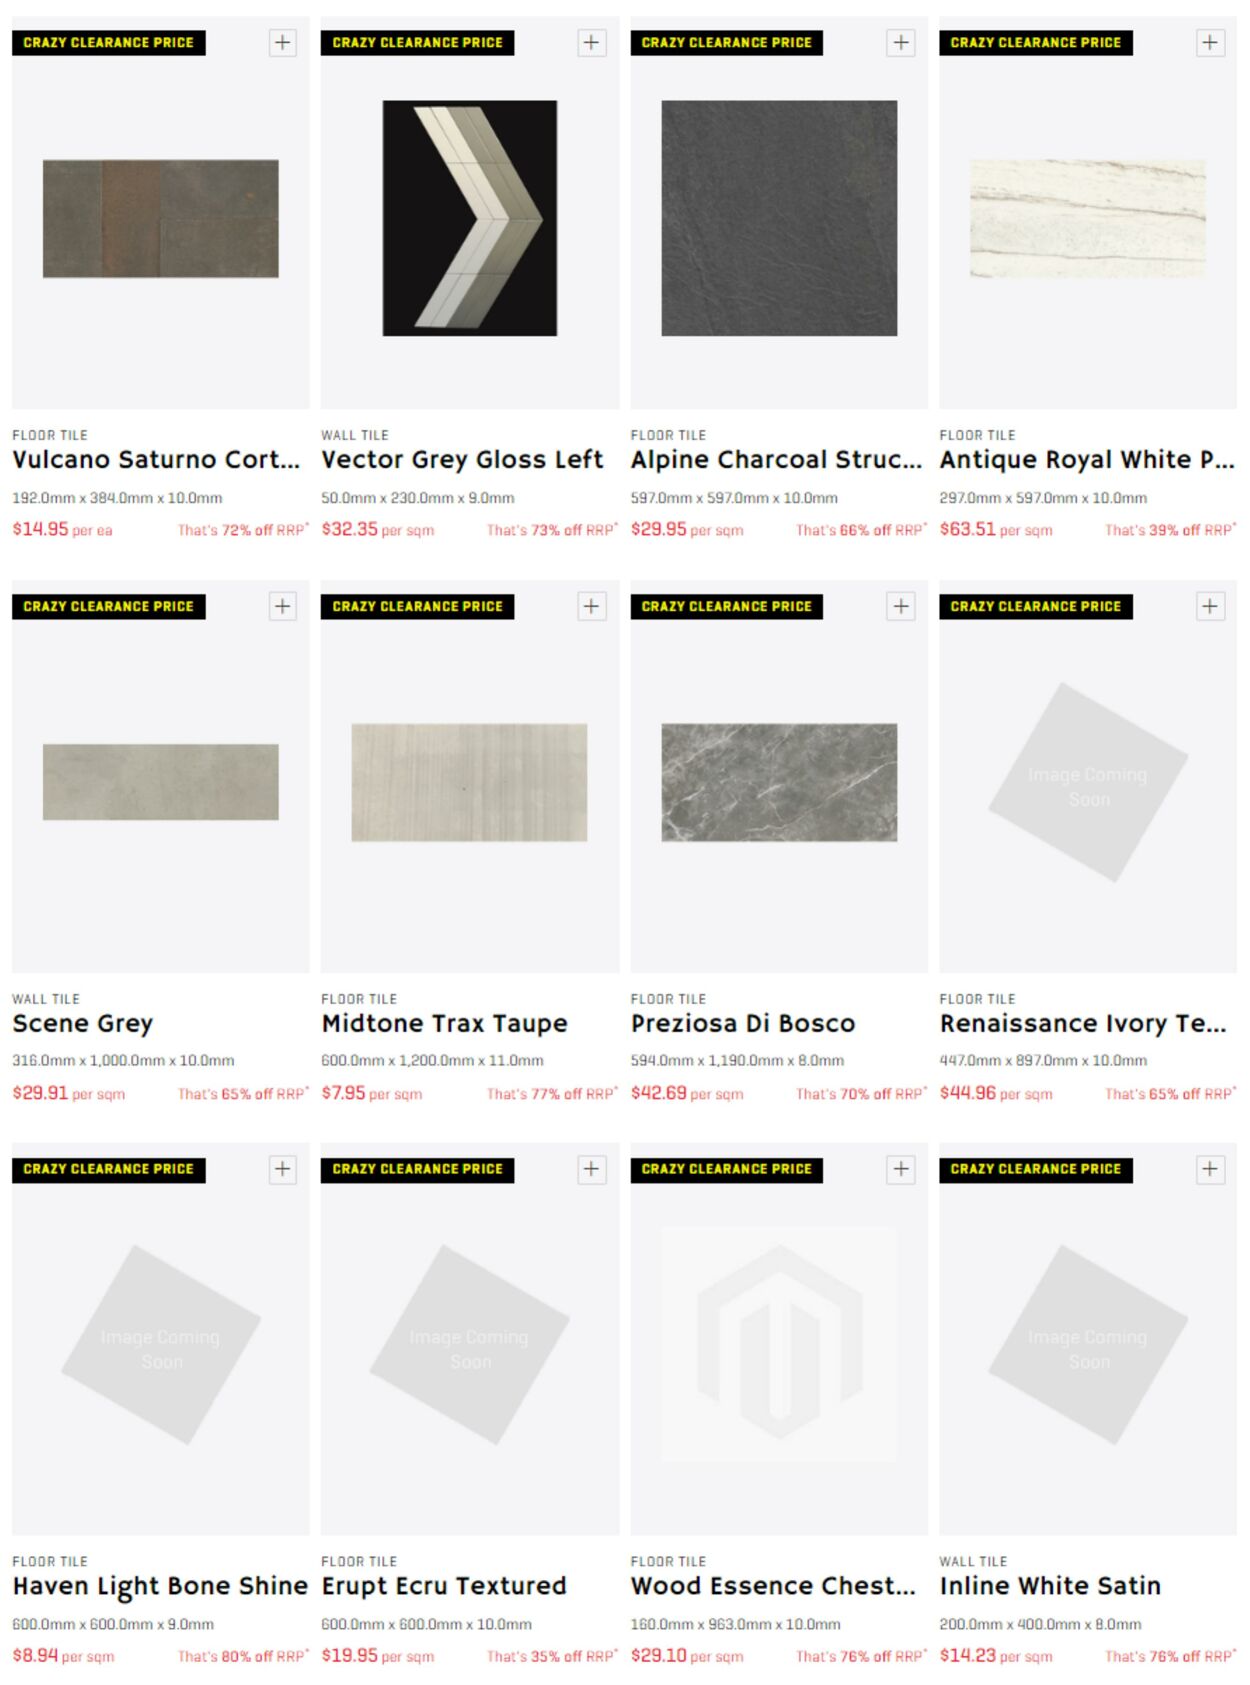 Catalogue Beaumont Tiles 08.03.2023 - 21.03.2023